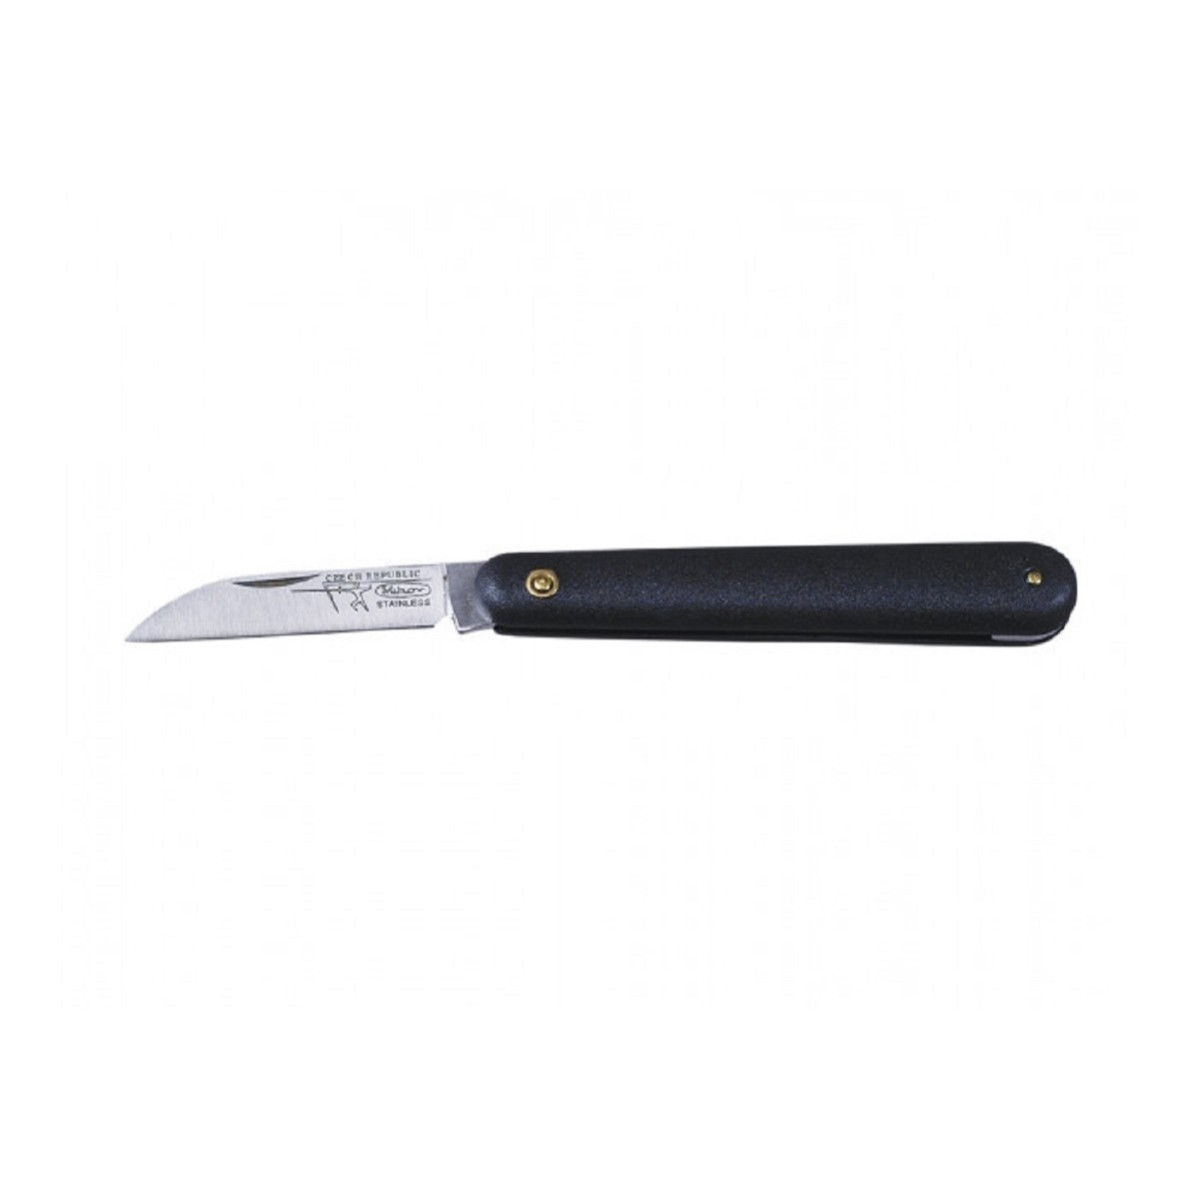 Roubovací nůž - 10 cm - roubovací pomůcky - 1 ks